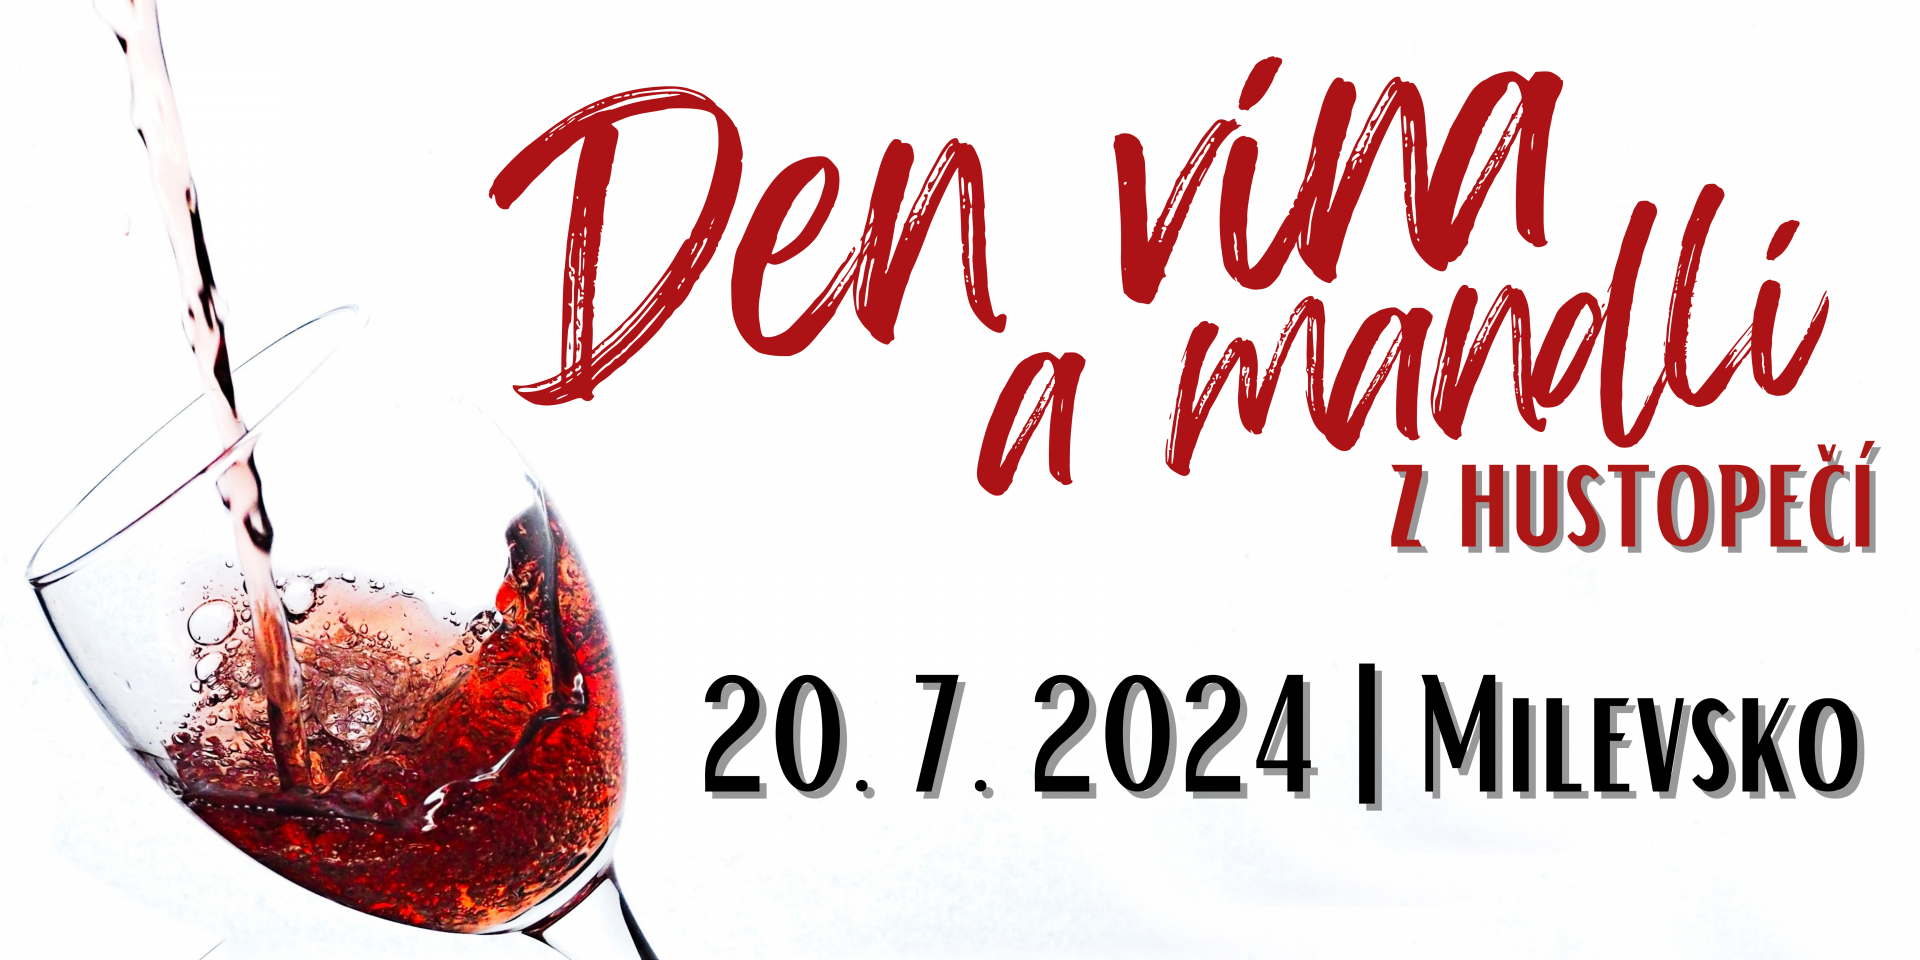 Plakát Den vína a mandlí z Hustopečí